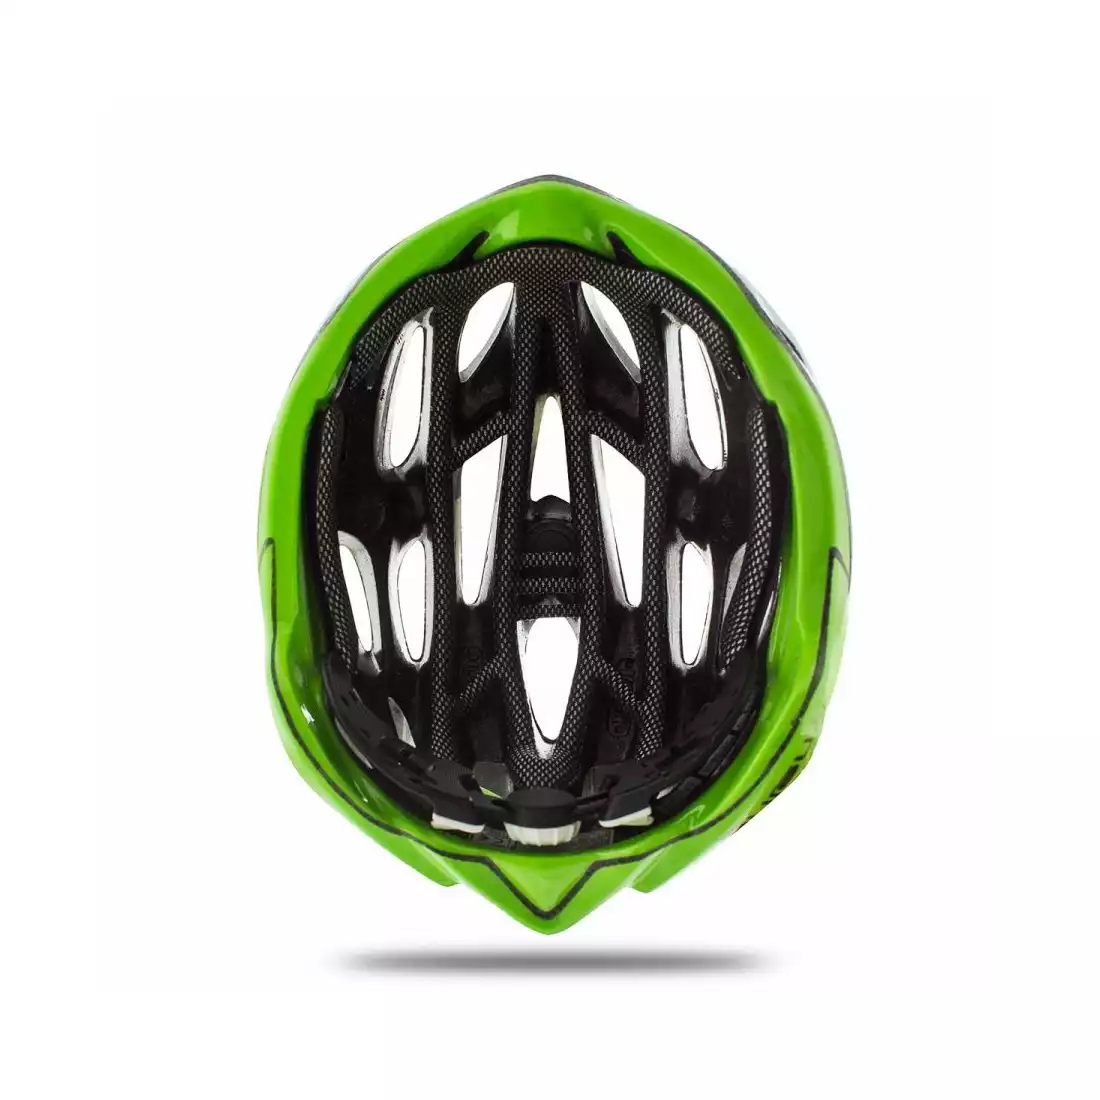 KASK MOJITO - kask rowerowy CHE00026.208 kolor:biało-zielony